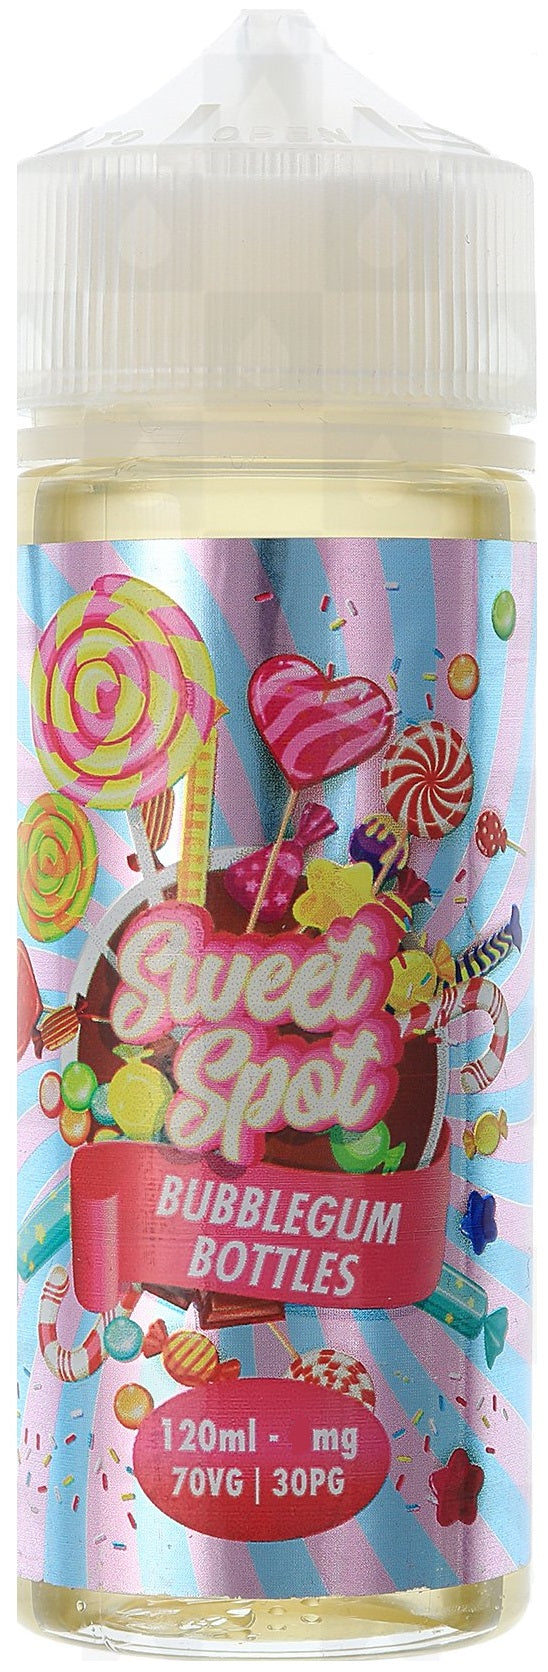 Bubblegum Bottles by Sweet Spot 120ml